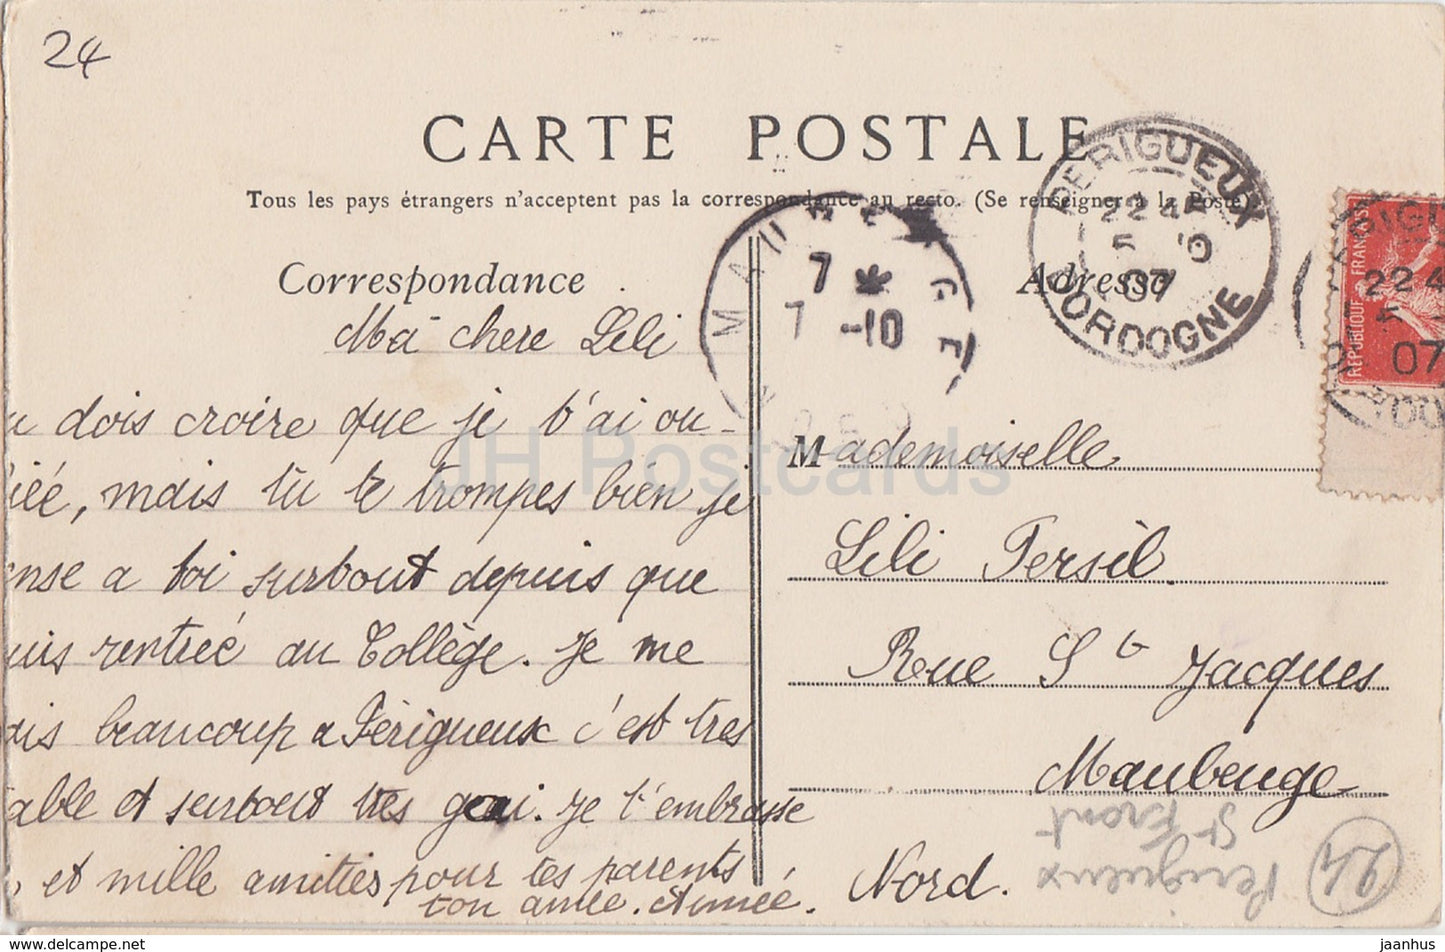 Perigueux - Basilique Saint Front - Kathedrale - alte Postkarte - 1907 - Frankreich - gebraucht